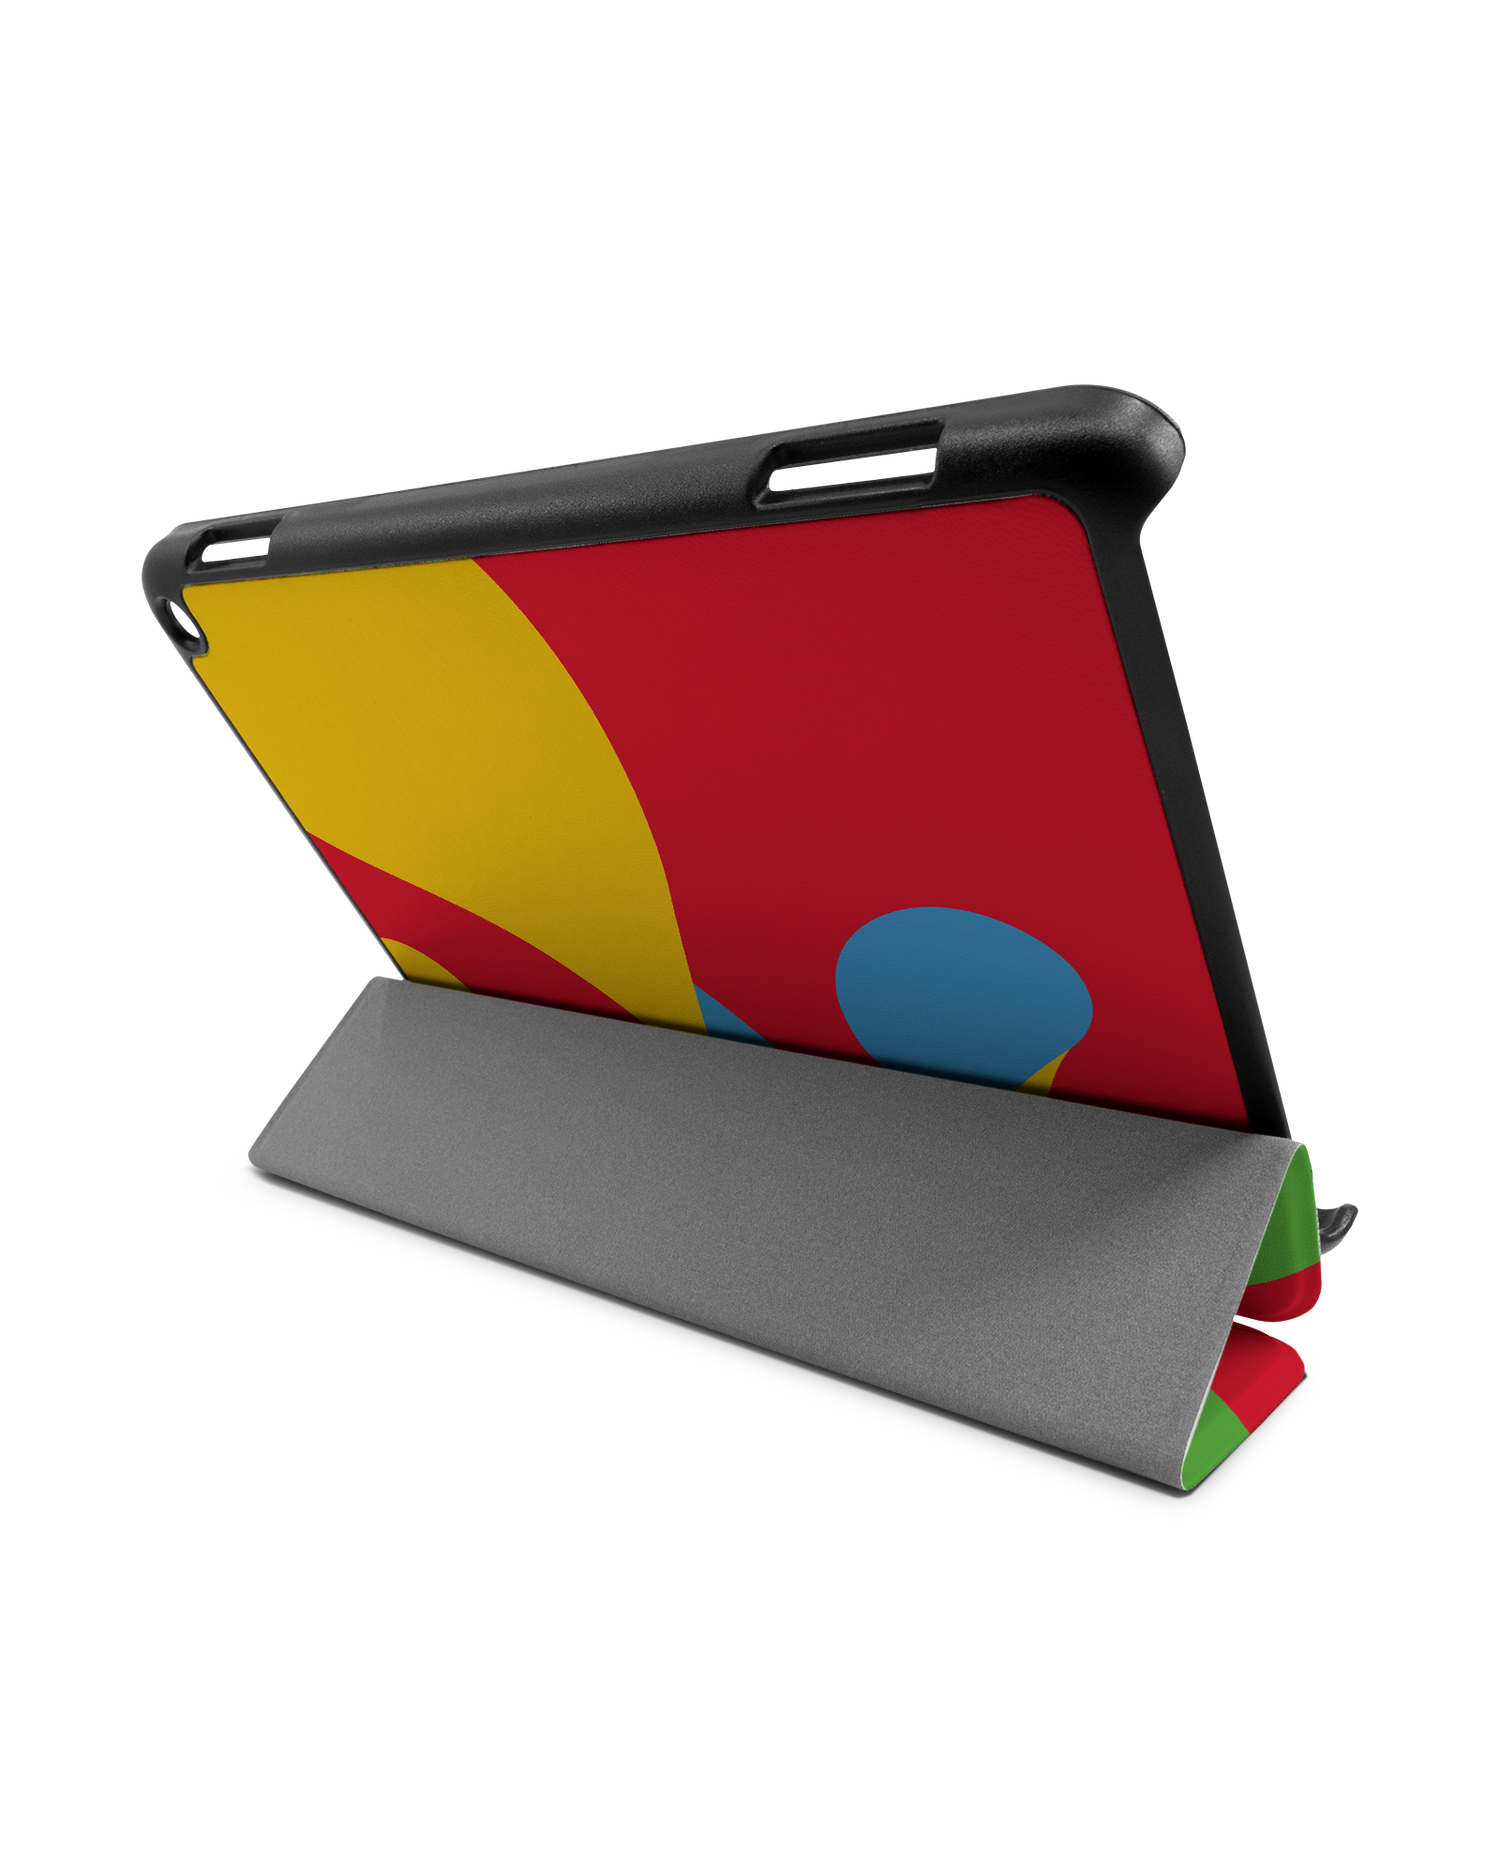 Pringles Chip Tablet Smart Case für Amazon Fire HD 8 (2022), Amazon Fire HD 8 Plus (2022), Amazon Fire HD 8 (2020), Amazon Fire HD 8 Plus (2020): Aufgestellt im Querformat